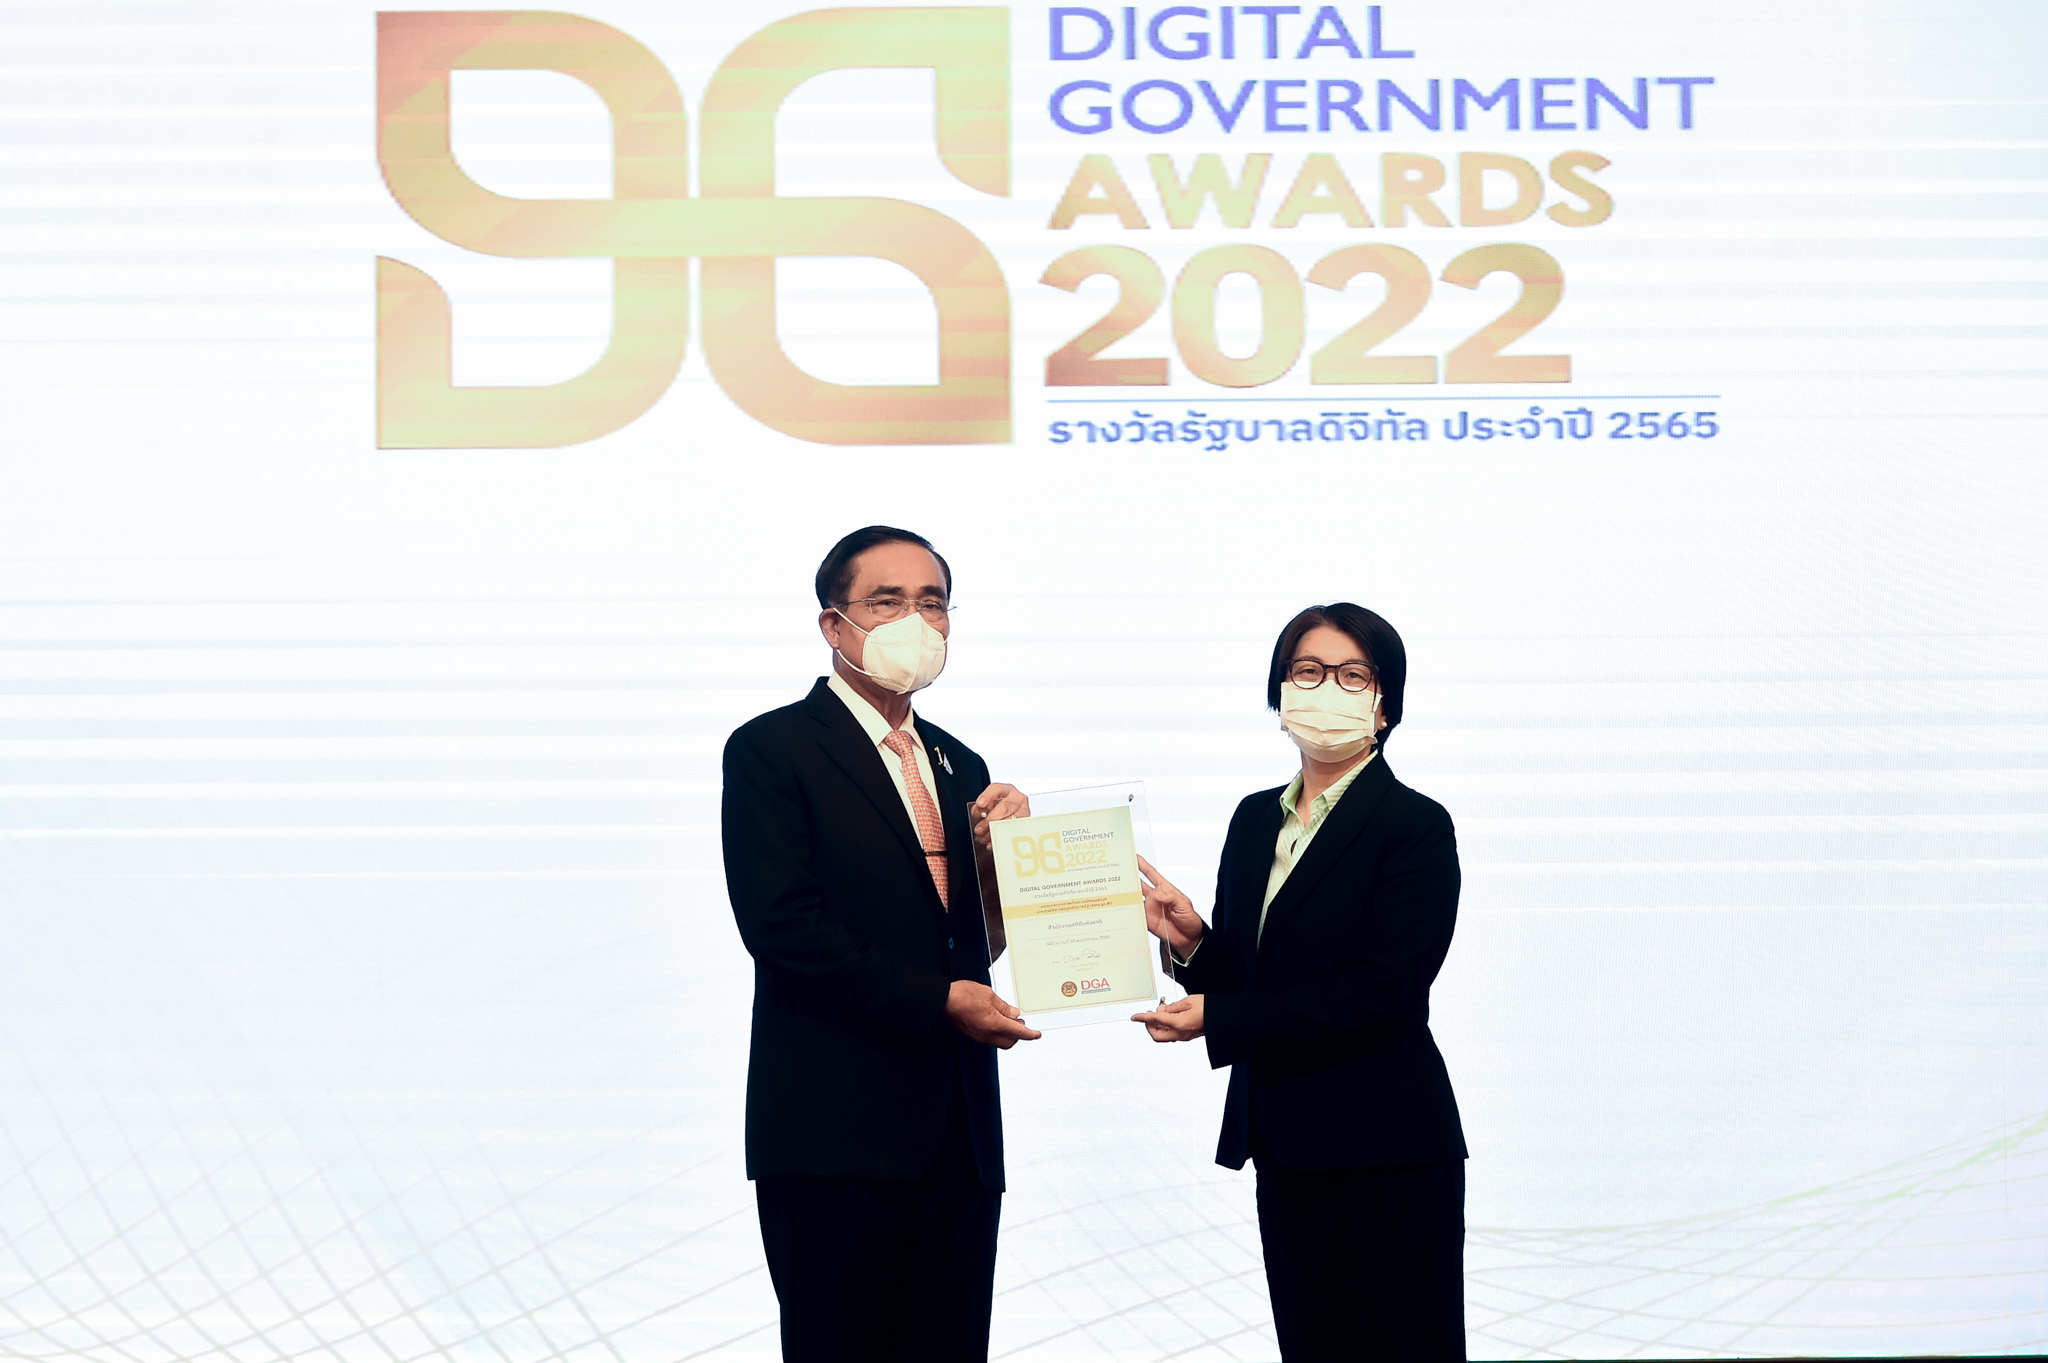 งานมอบรางวัลรัฐบาลดิจิทัล ประจำปี 2565 “DG Awards 2022”  